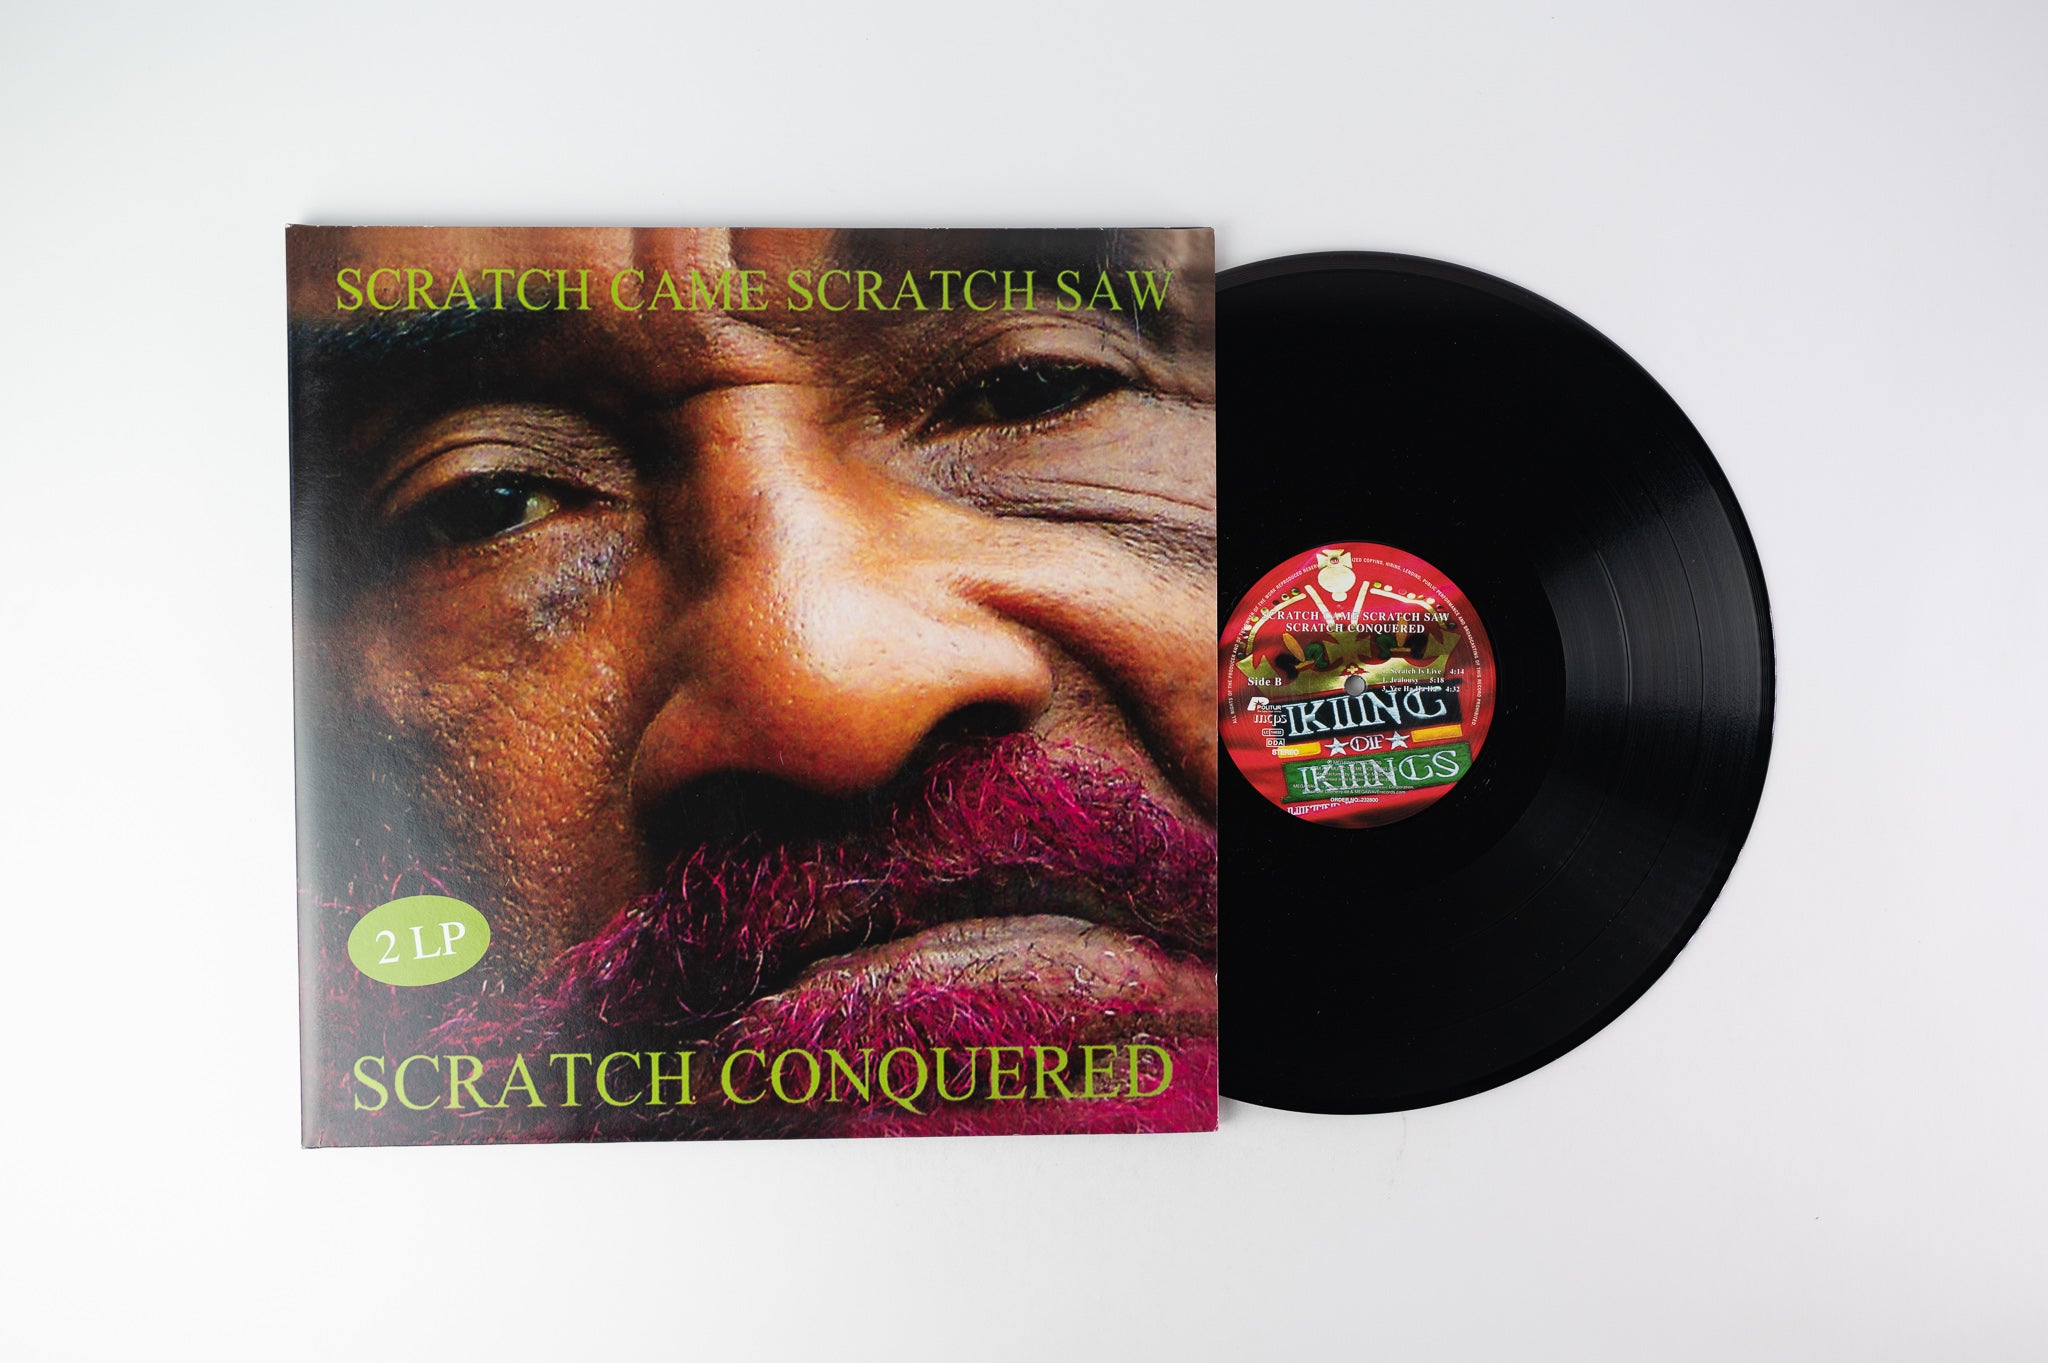 Lee Perry - Scratch Came Scratch Saw Scratch Conquered 2 LP's